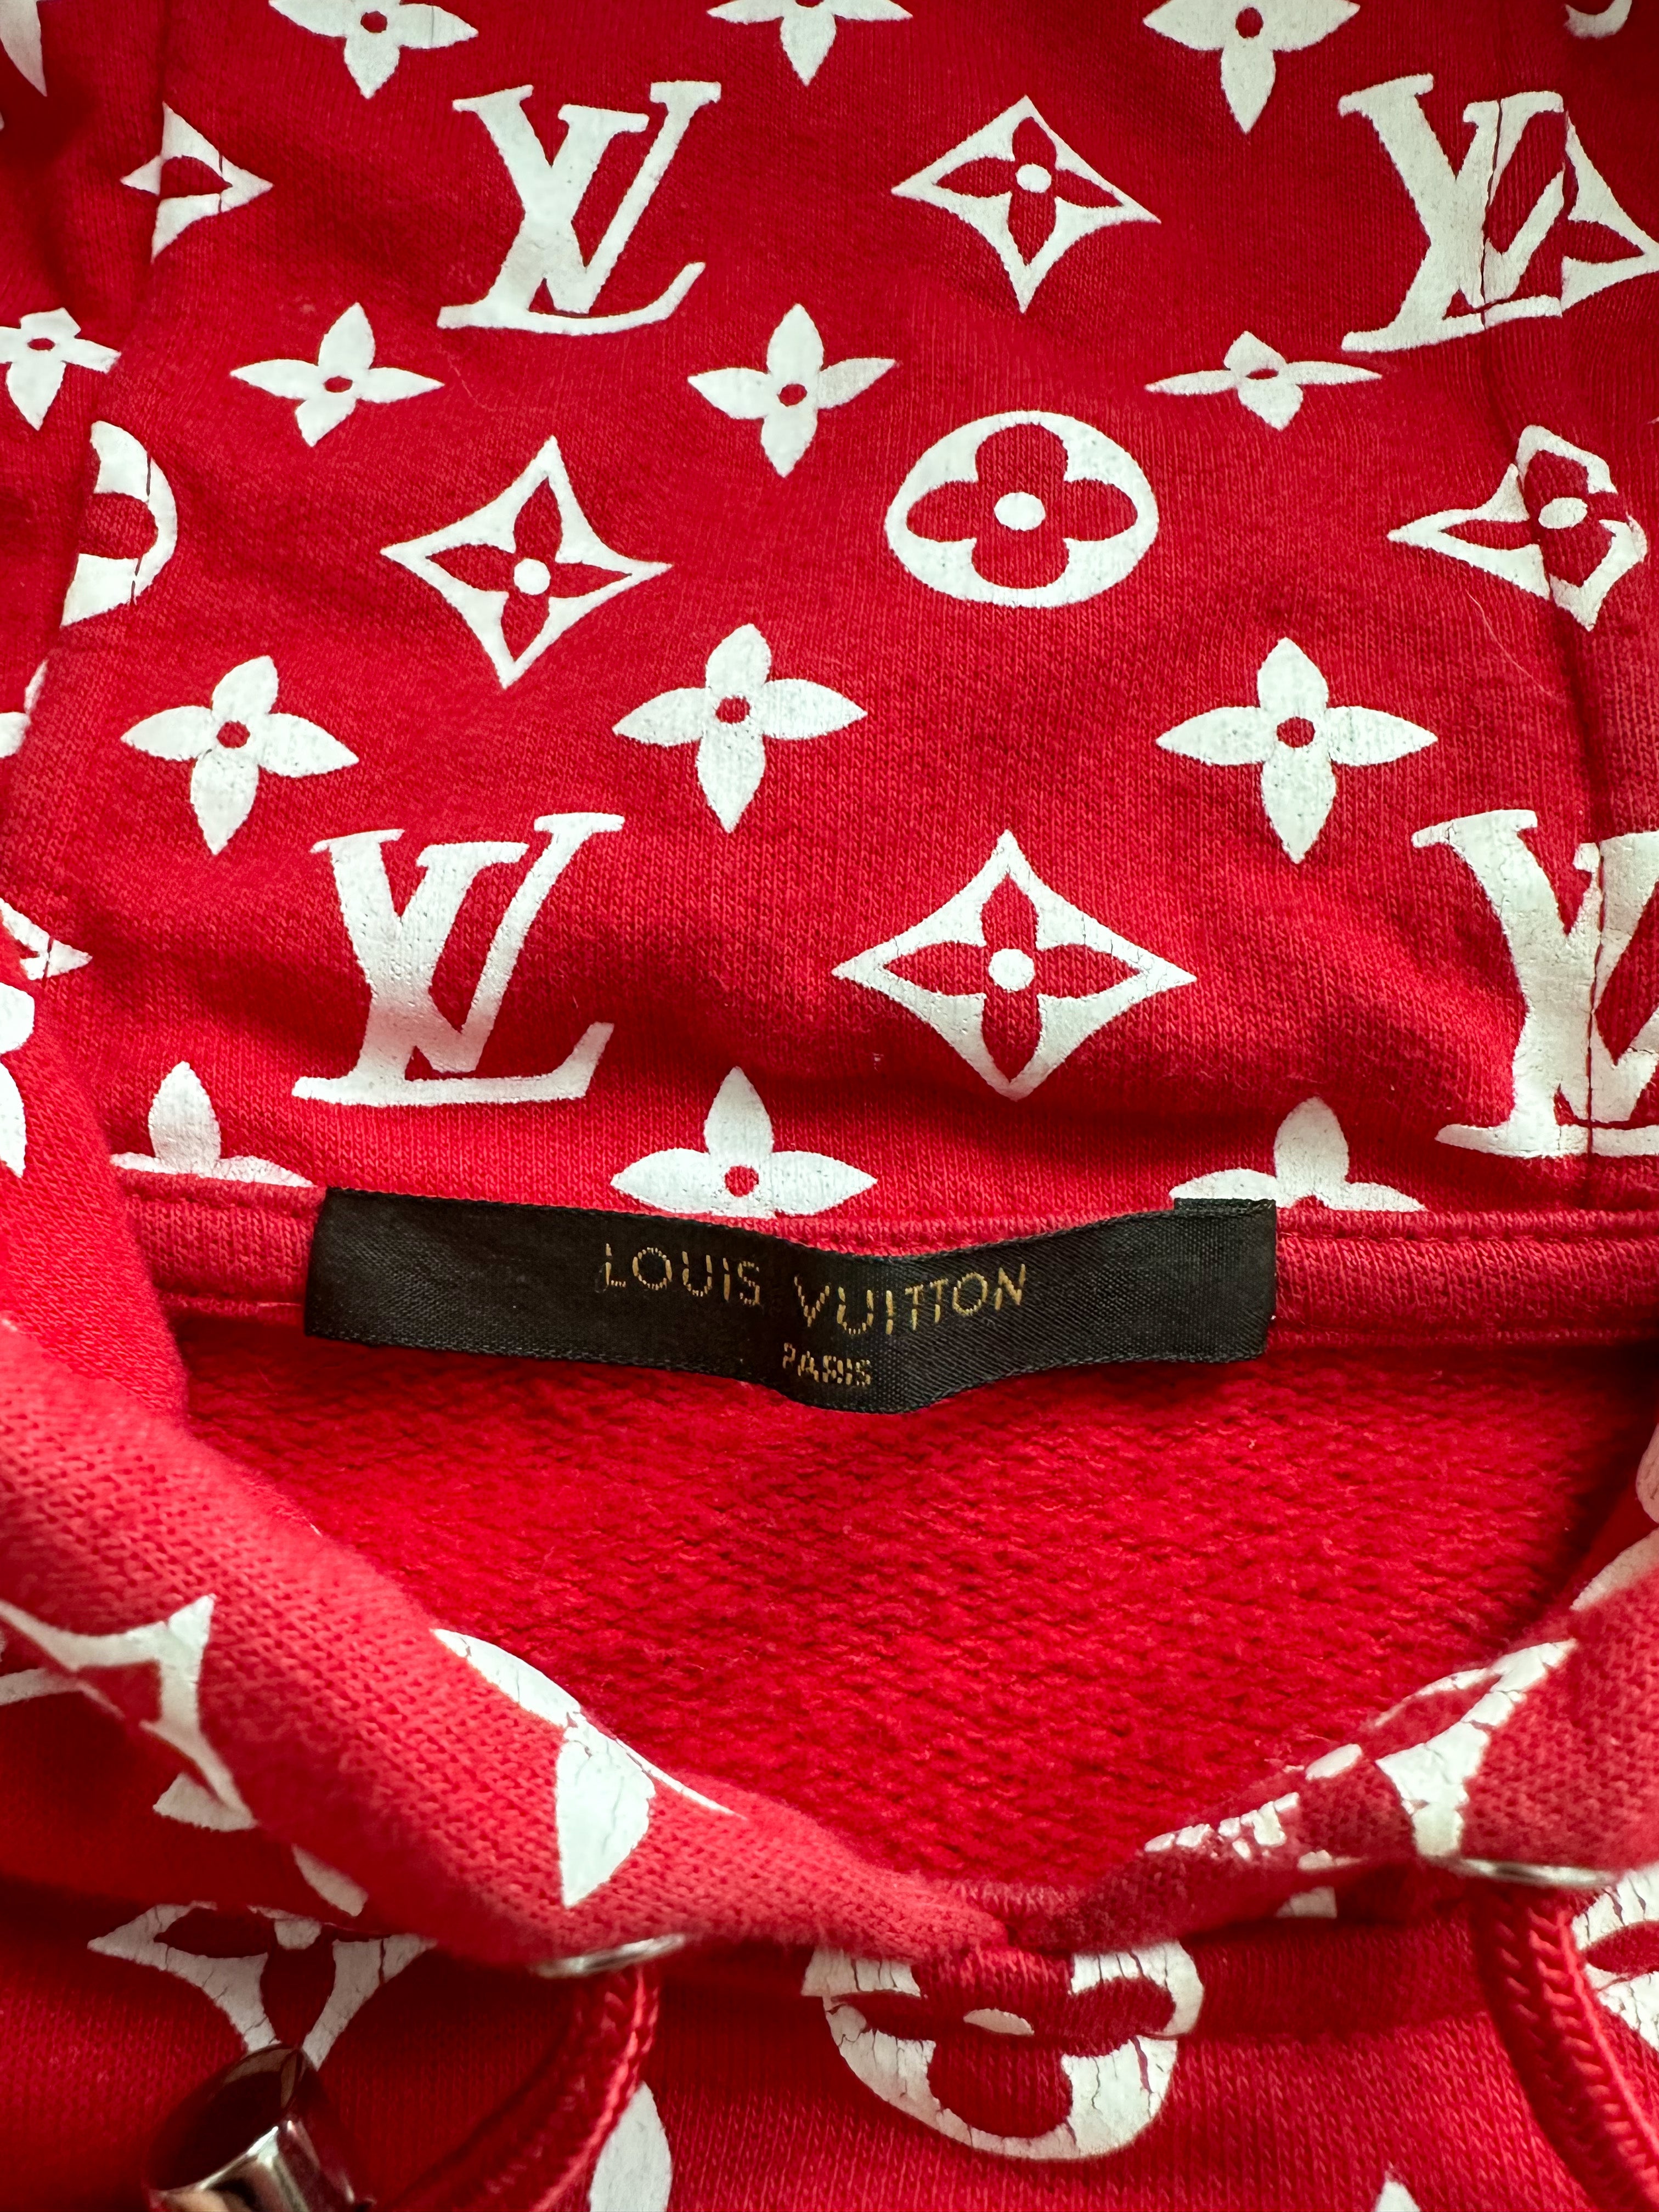 Hoodie LOUIS VUITTON x SUPREME POPUP STORE Tshirt Tshirt fashion  adidas png  PNGEgg